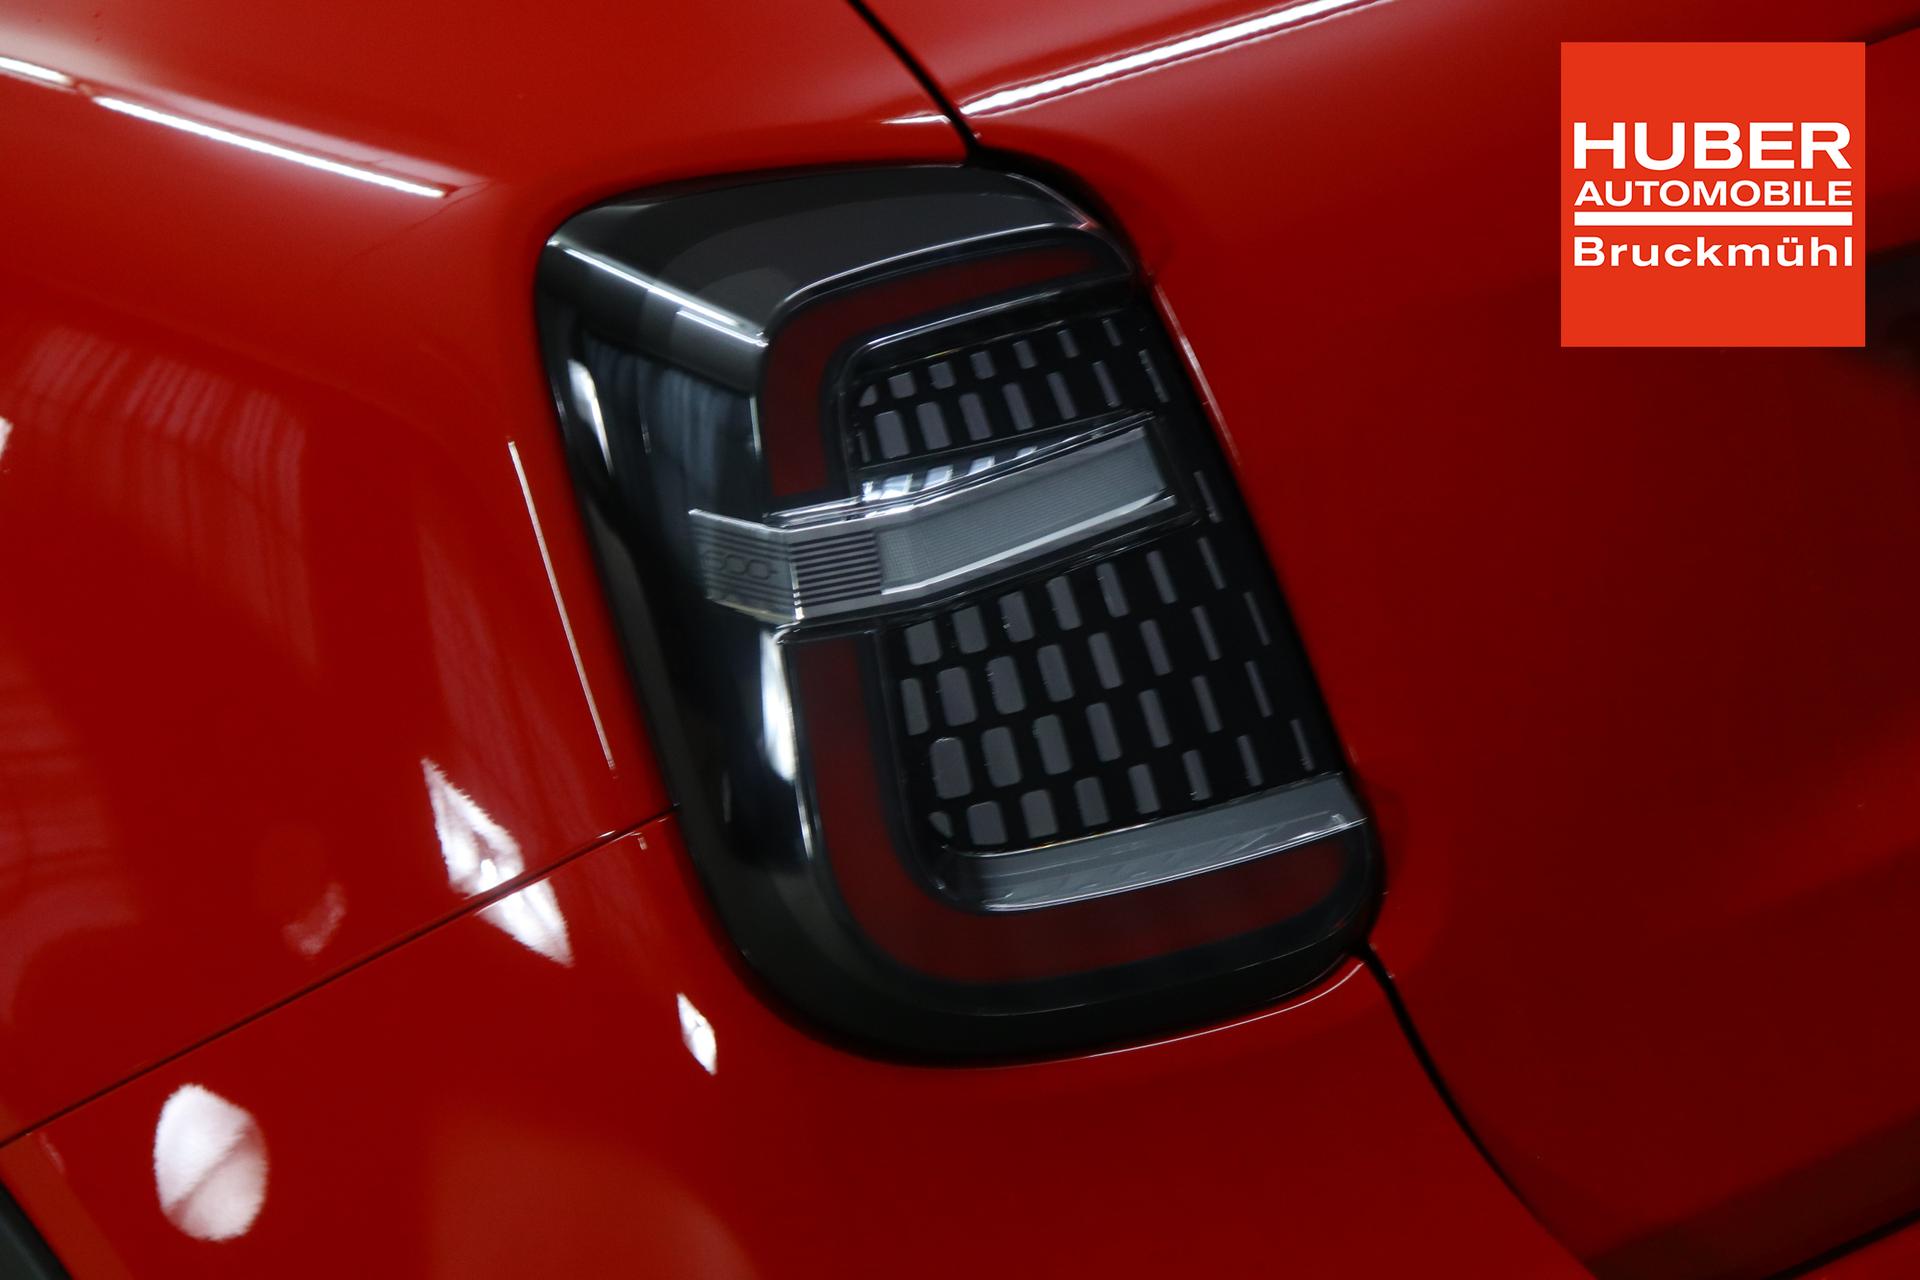 Fiat 600e RED 54kWh 115kW, Klimaautomatik, Ambiente Licht inkl. Color  Therapy, 10,25 Infotainment, AppleCarPlay&Android Auto, Parksensoren  hinten, Spurhalteassistent, LED Scheinwerfer, Nebelscheinwerfer, 16  Stahlfelgen, uvm. Lagerfahrzeug Elektro